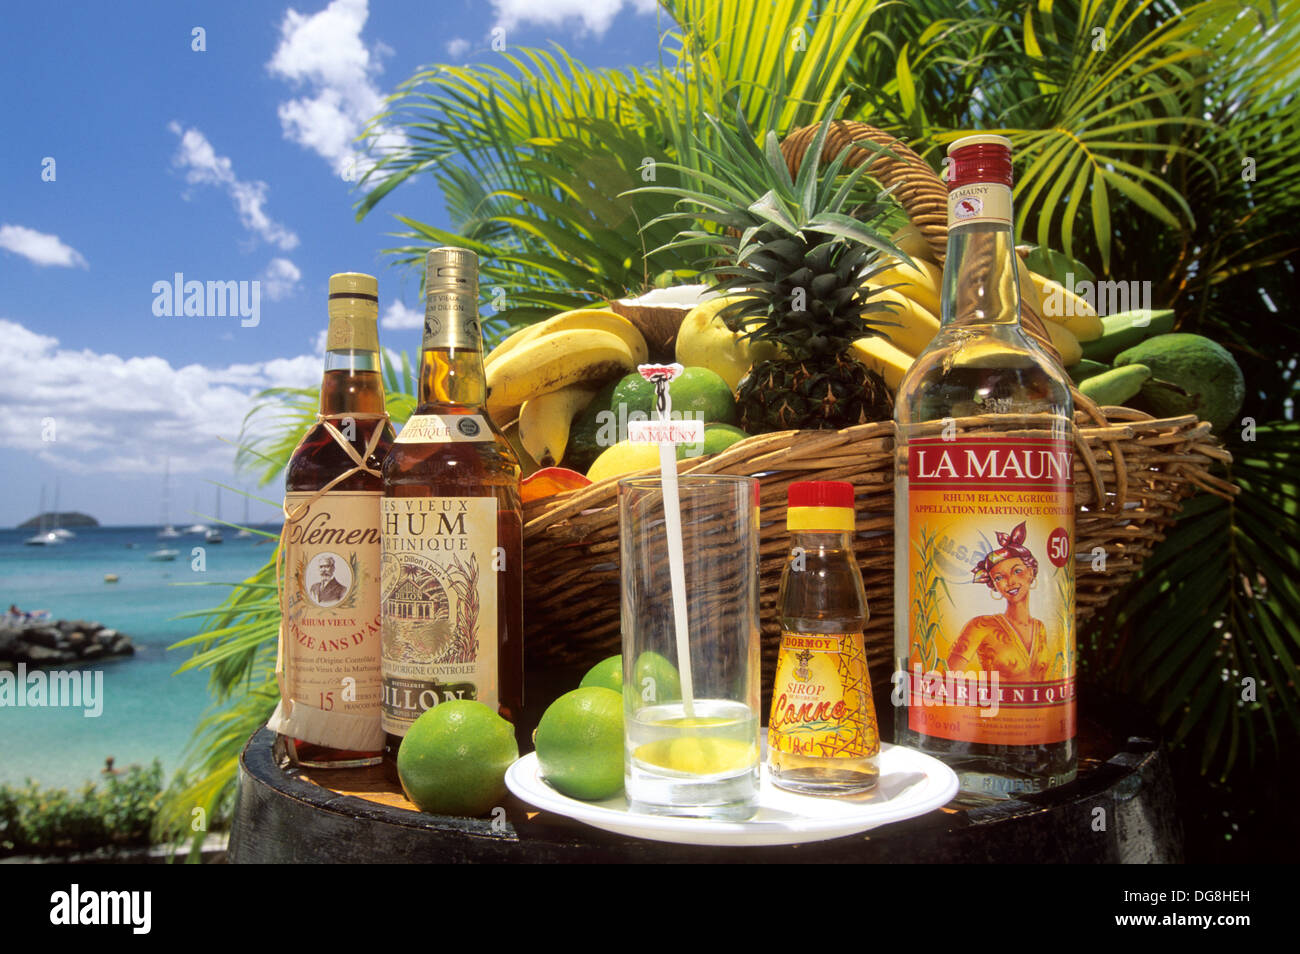 differentes marques de rhum martiniquais Ile de la Martinique Departement  et Region d´Outremer francais Archipel des Antilles Stock Photo - Alamy